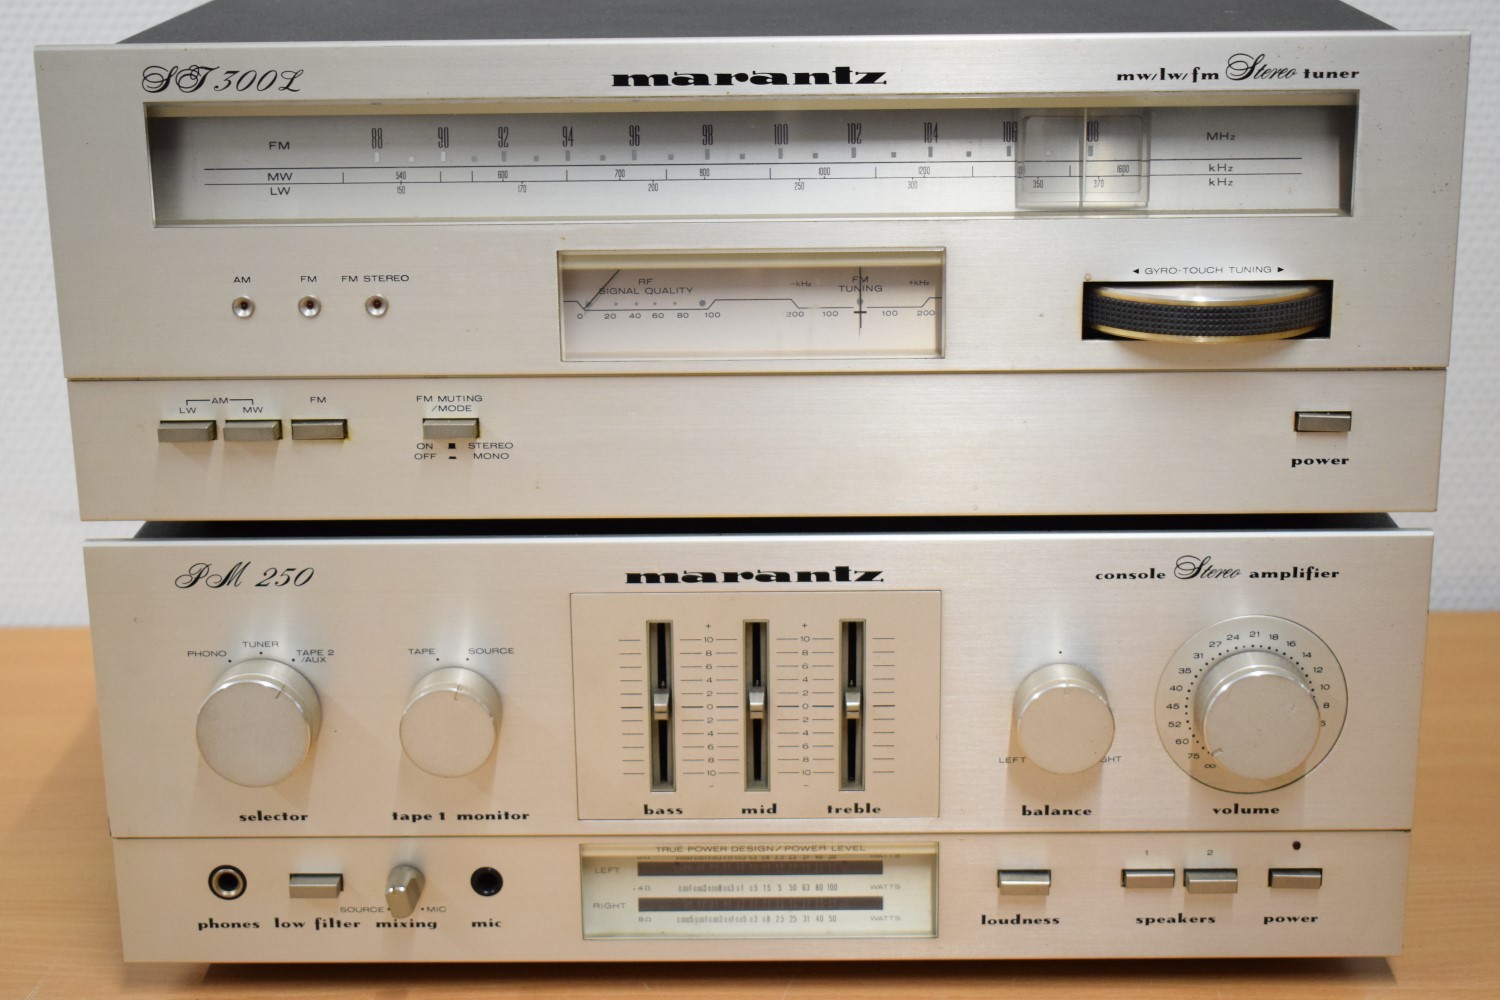 Marantz PM-250 Versterker & Marantz ST-300L Tuner Stereo-Set